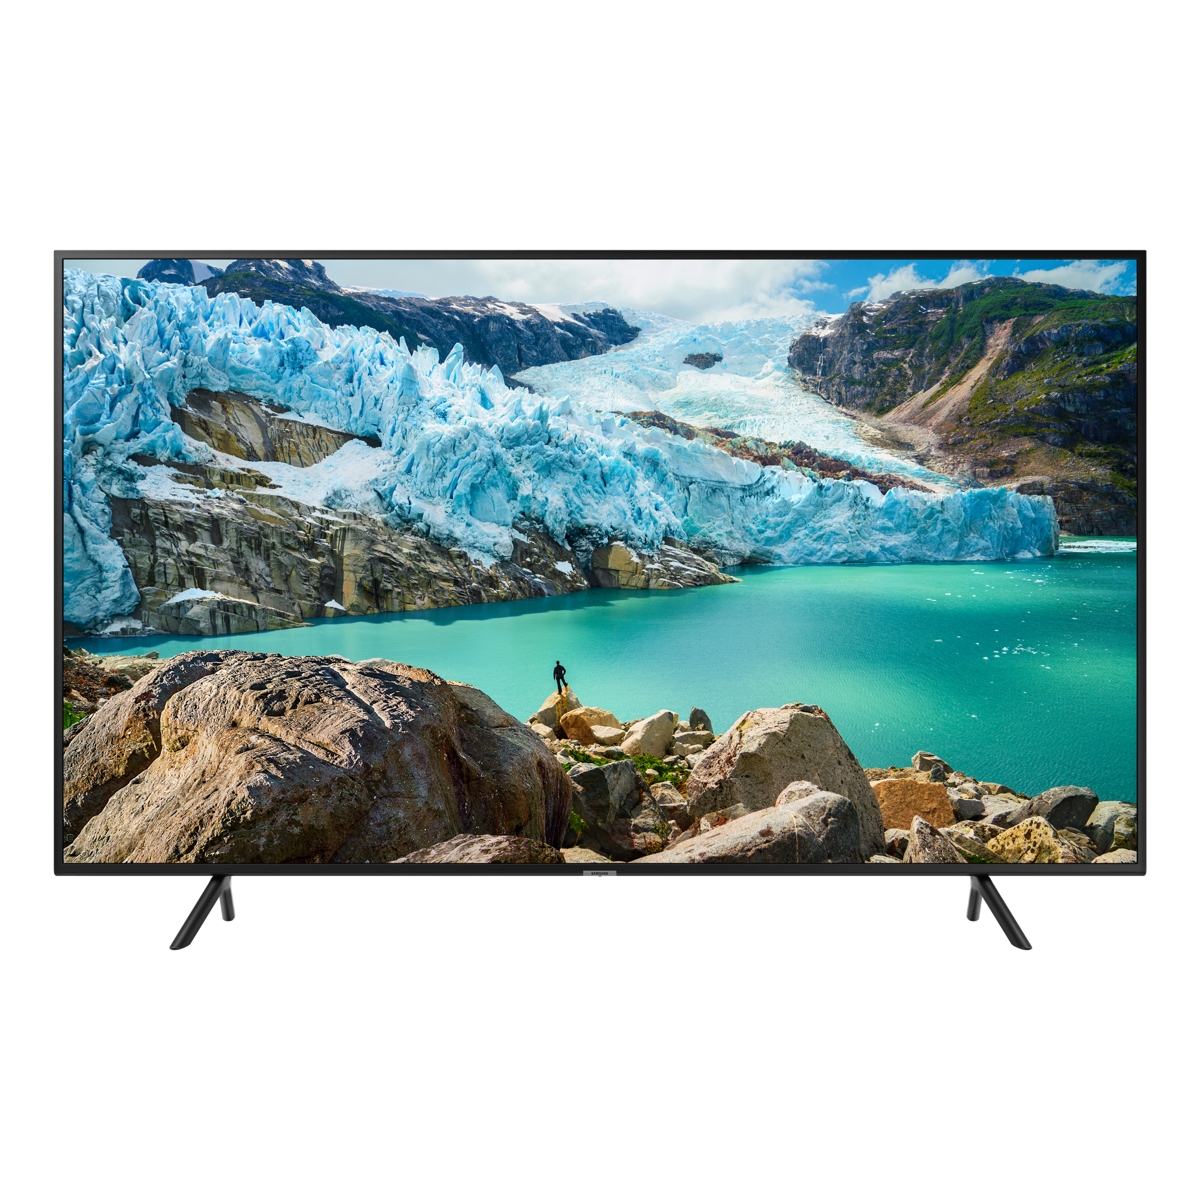 Samsung 55 Smart LED-LCD Hospitality TV - 4K UHDTV - LED HG55NJ690UF